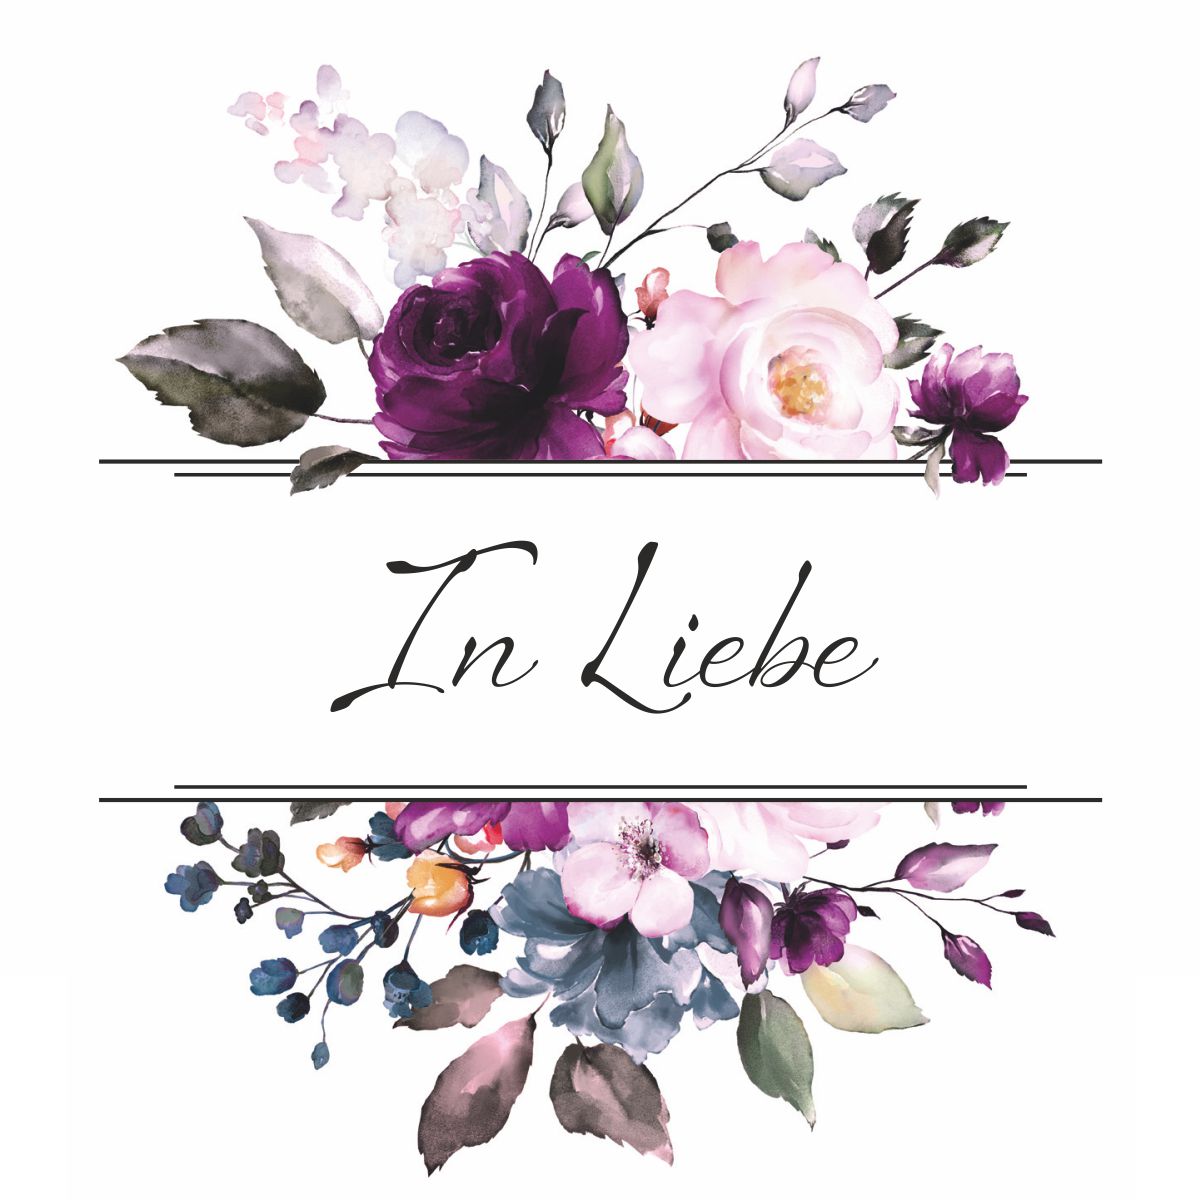 Motiv lila Rosen mit Text "In Liebe"